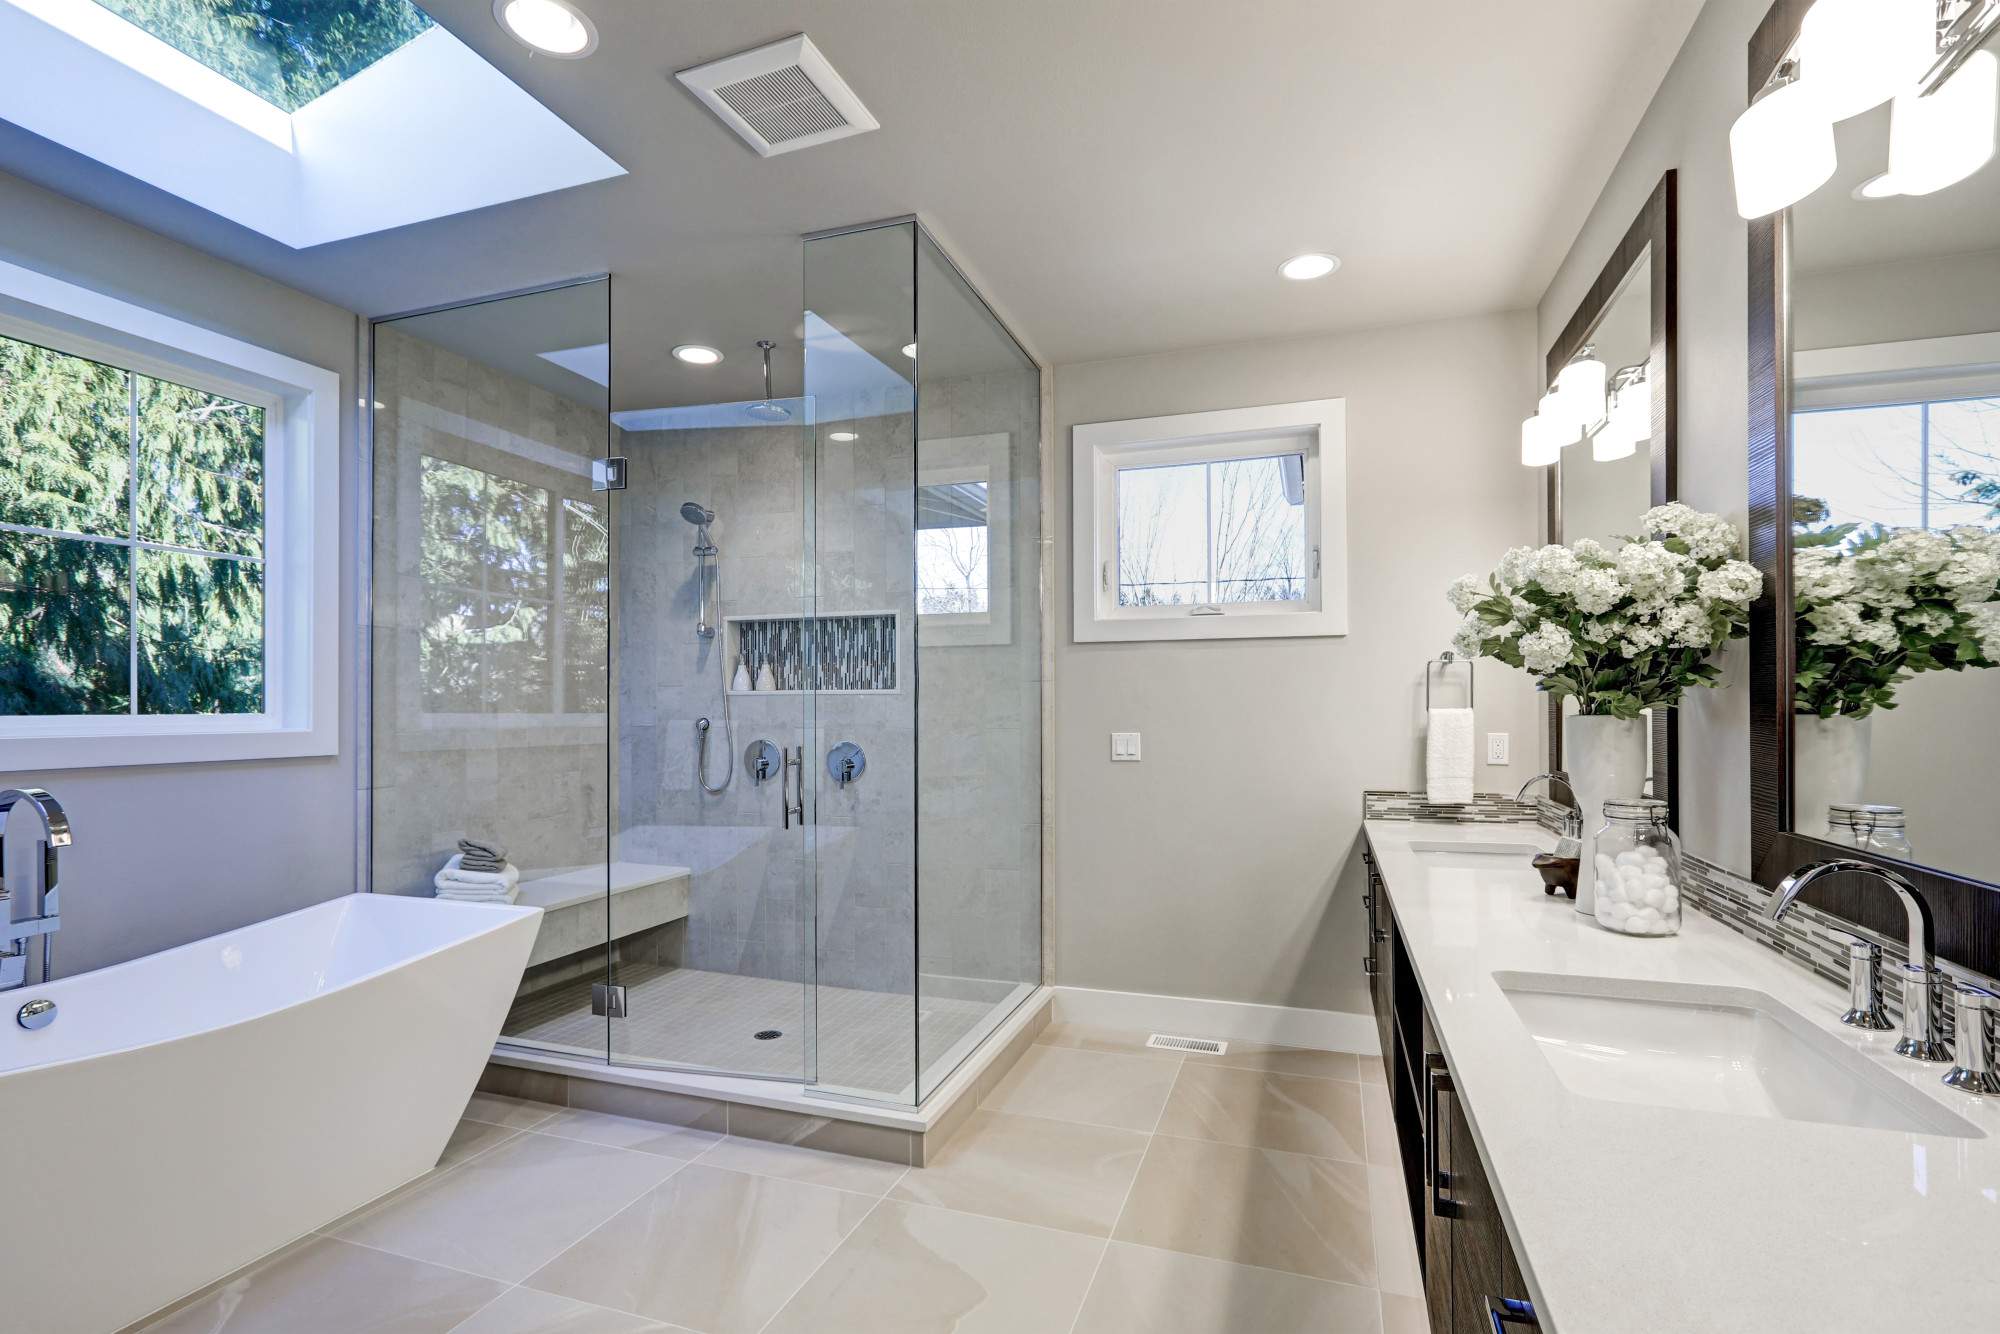 Popular Bathroom Tile Design Trends